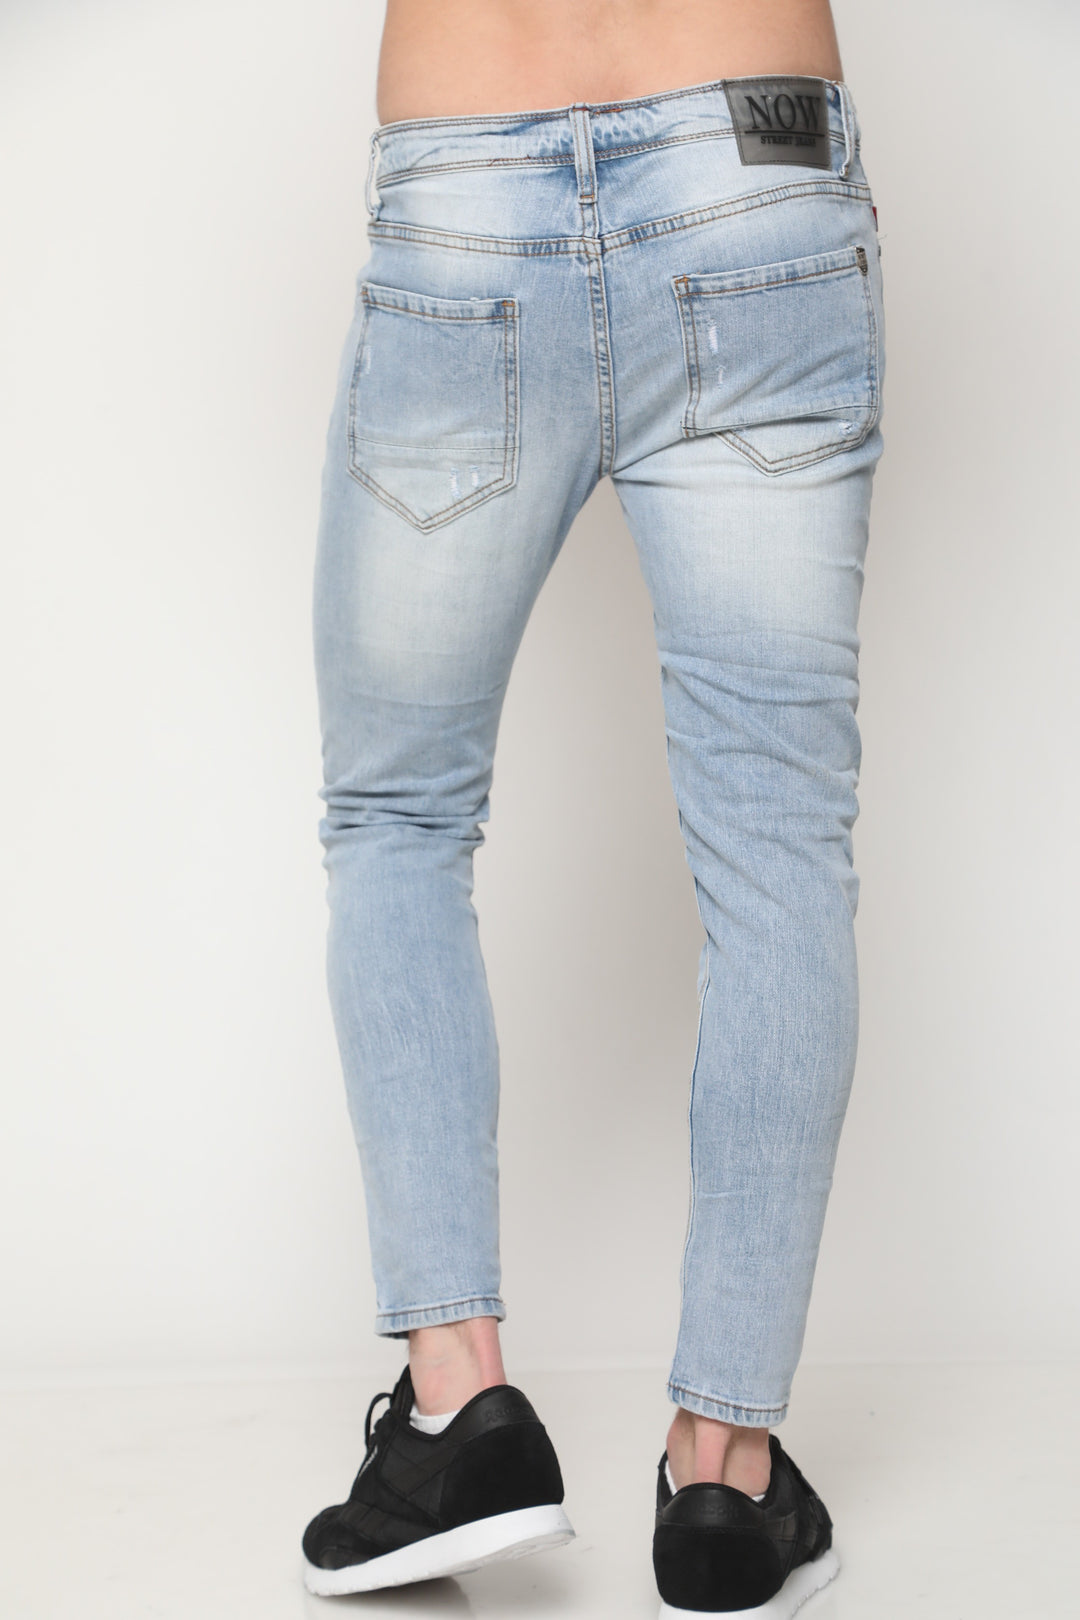 ג'ינס סופר סקיני 723 - canavaro jeans